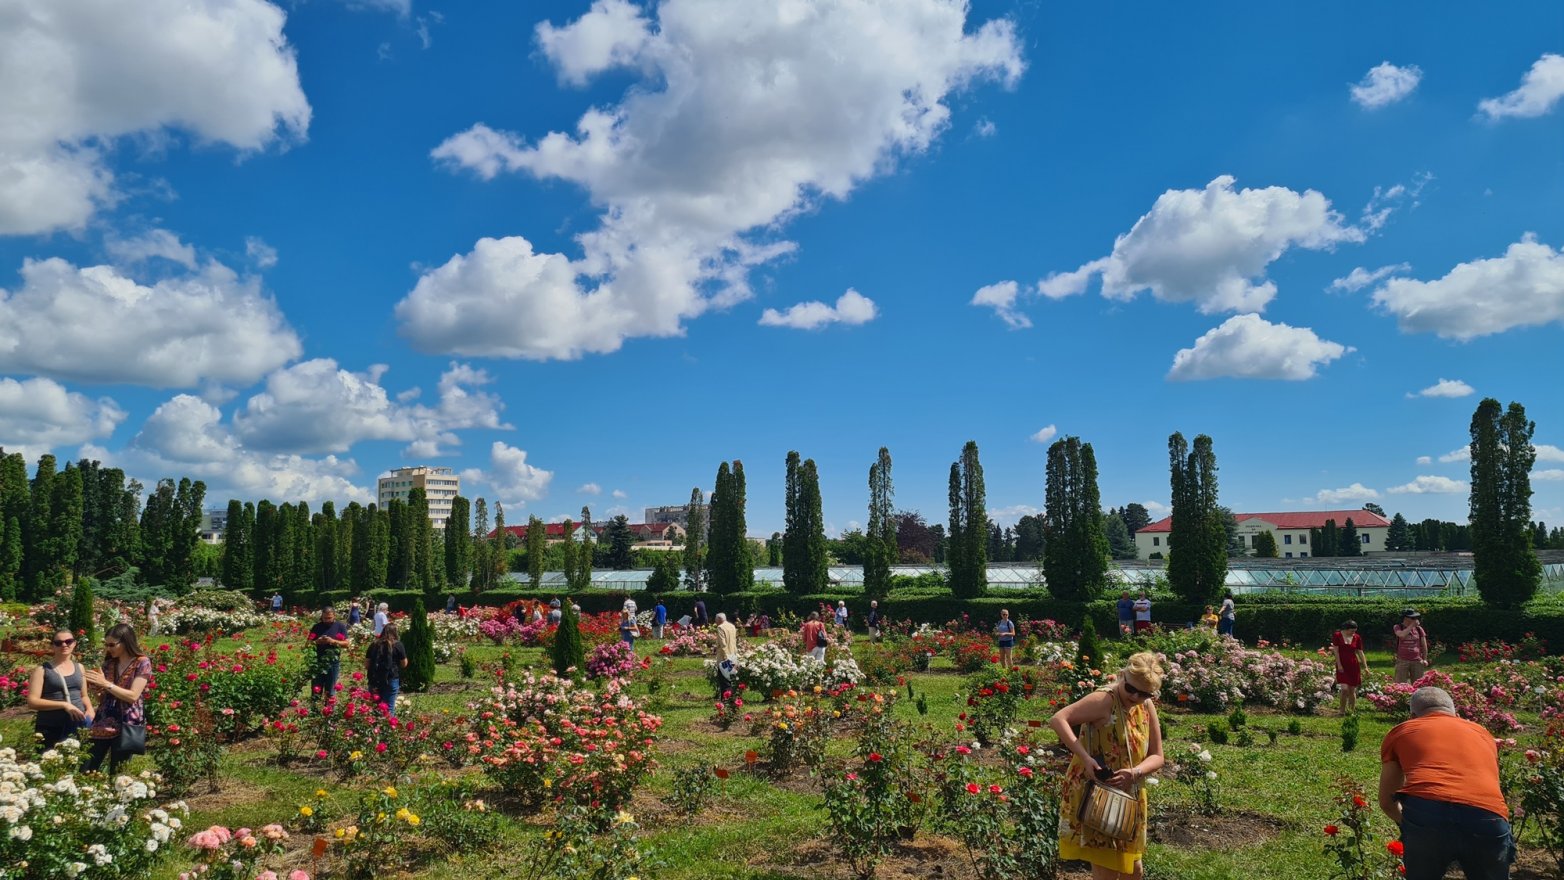 Kolozsvári illatfelhő: több mint 300 fajta rózsát lehet megcsodálni szombaton